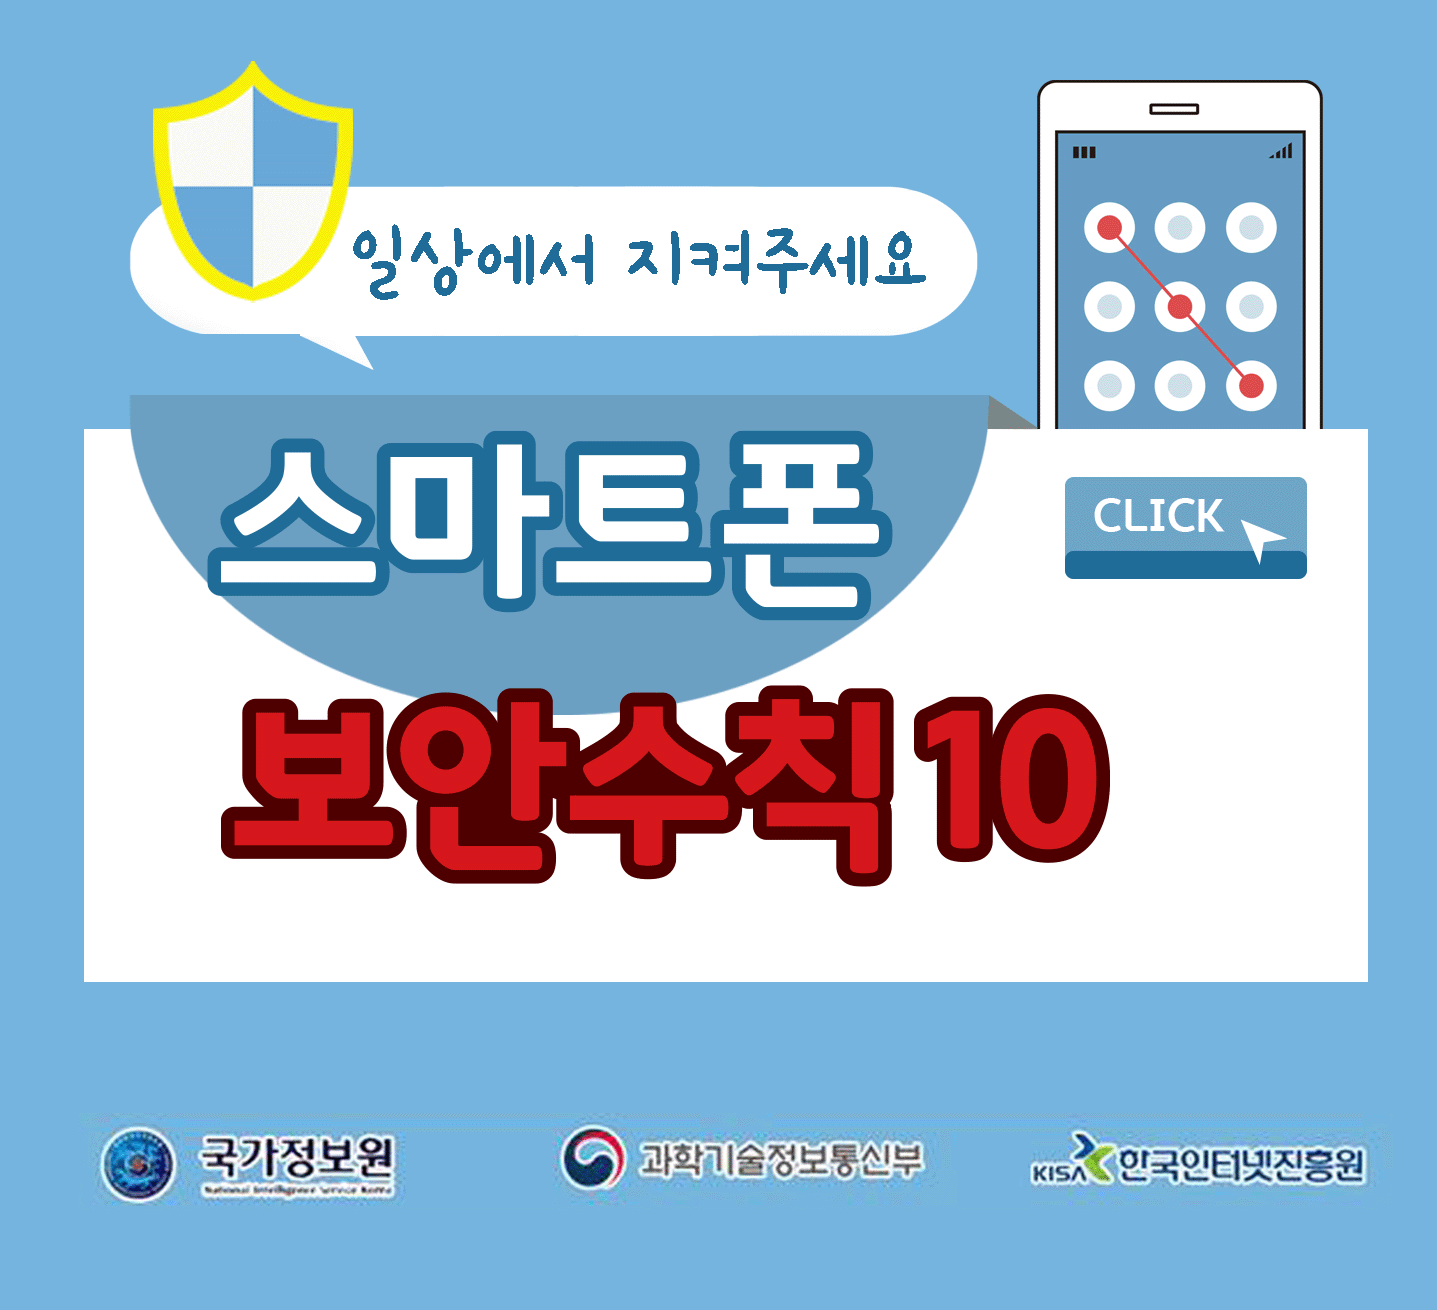 일상에서 지켜주세요
스마트폰 보안수칙 10 CLICK
국가정보원, 과학기술정보통신부, 한국인터넷진흥원;jsessionid=9B6C318B9C26B9EF98A3A8B34BE906B8